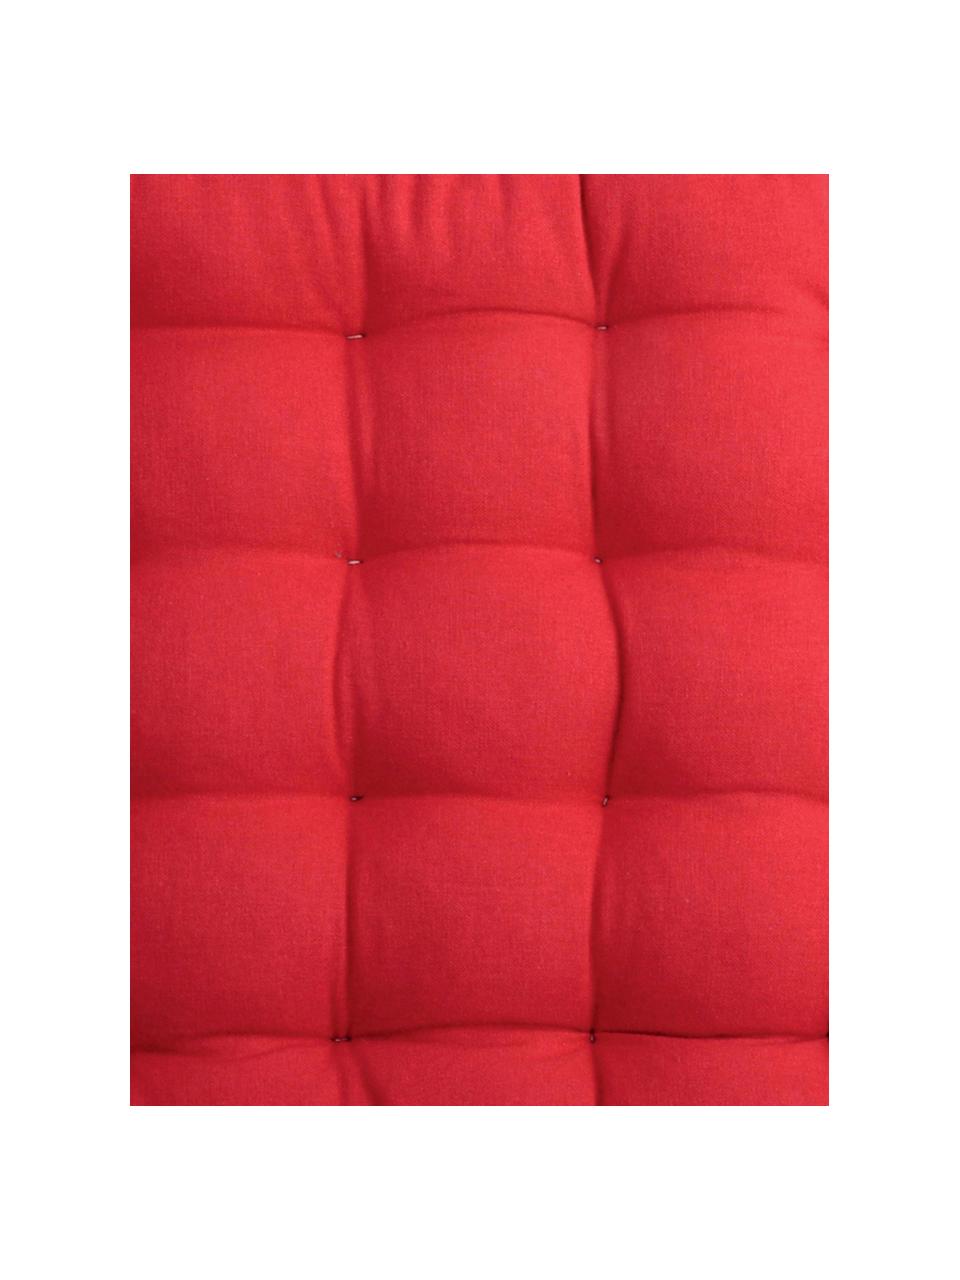 Cuscino sedia reversibile rosso/beige Duo 2 pz, Rosso, beige, Larg. 35 x Lung. 35 cm